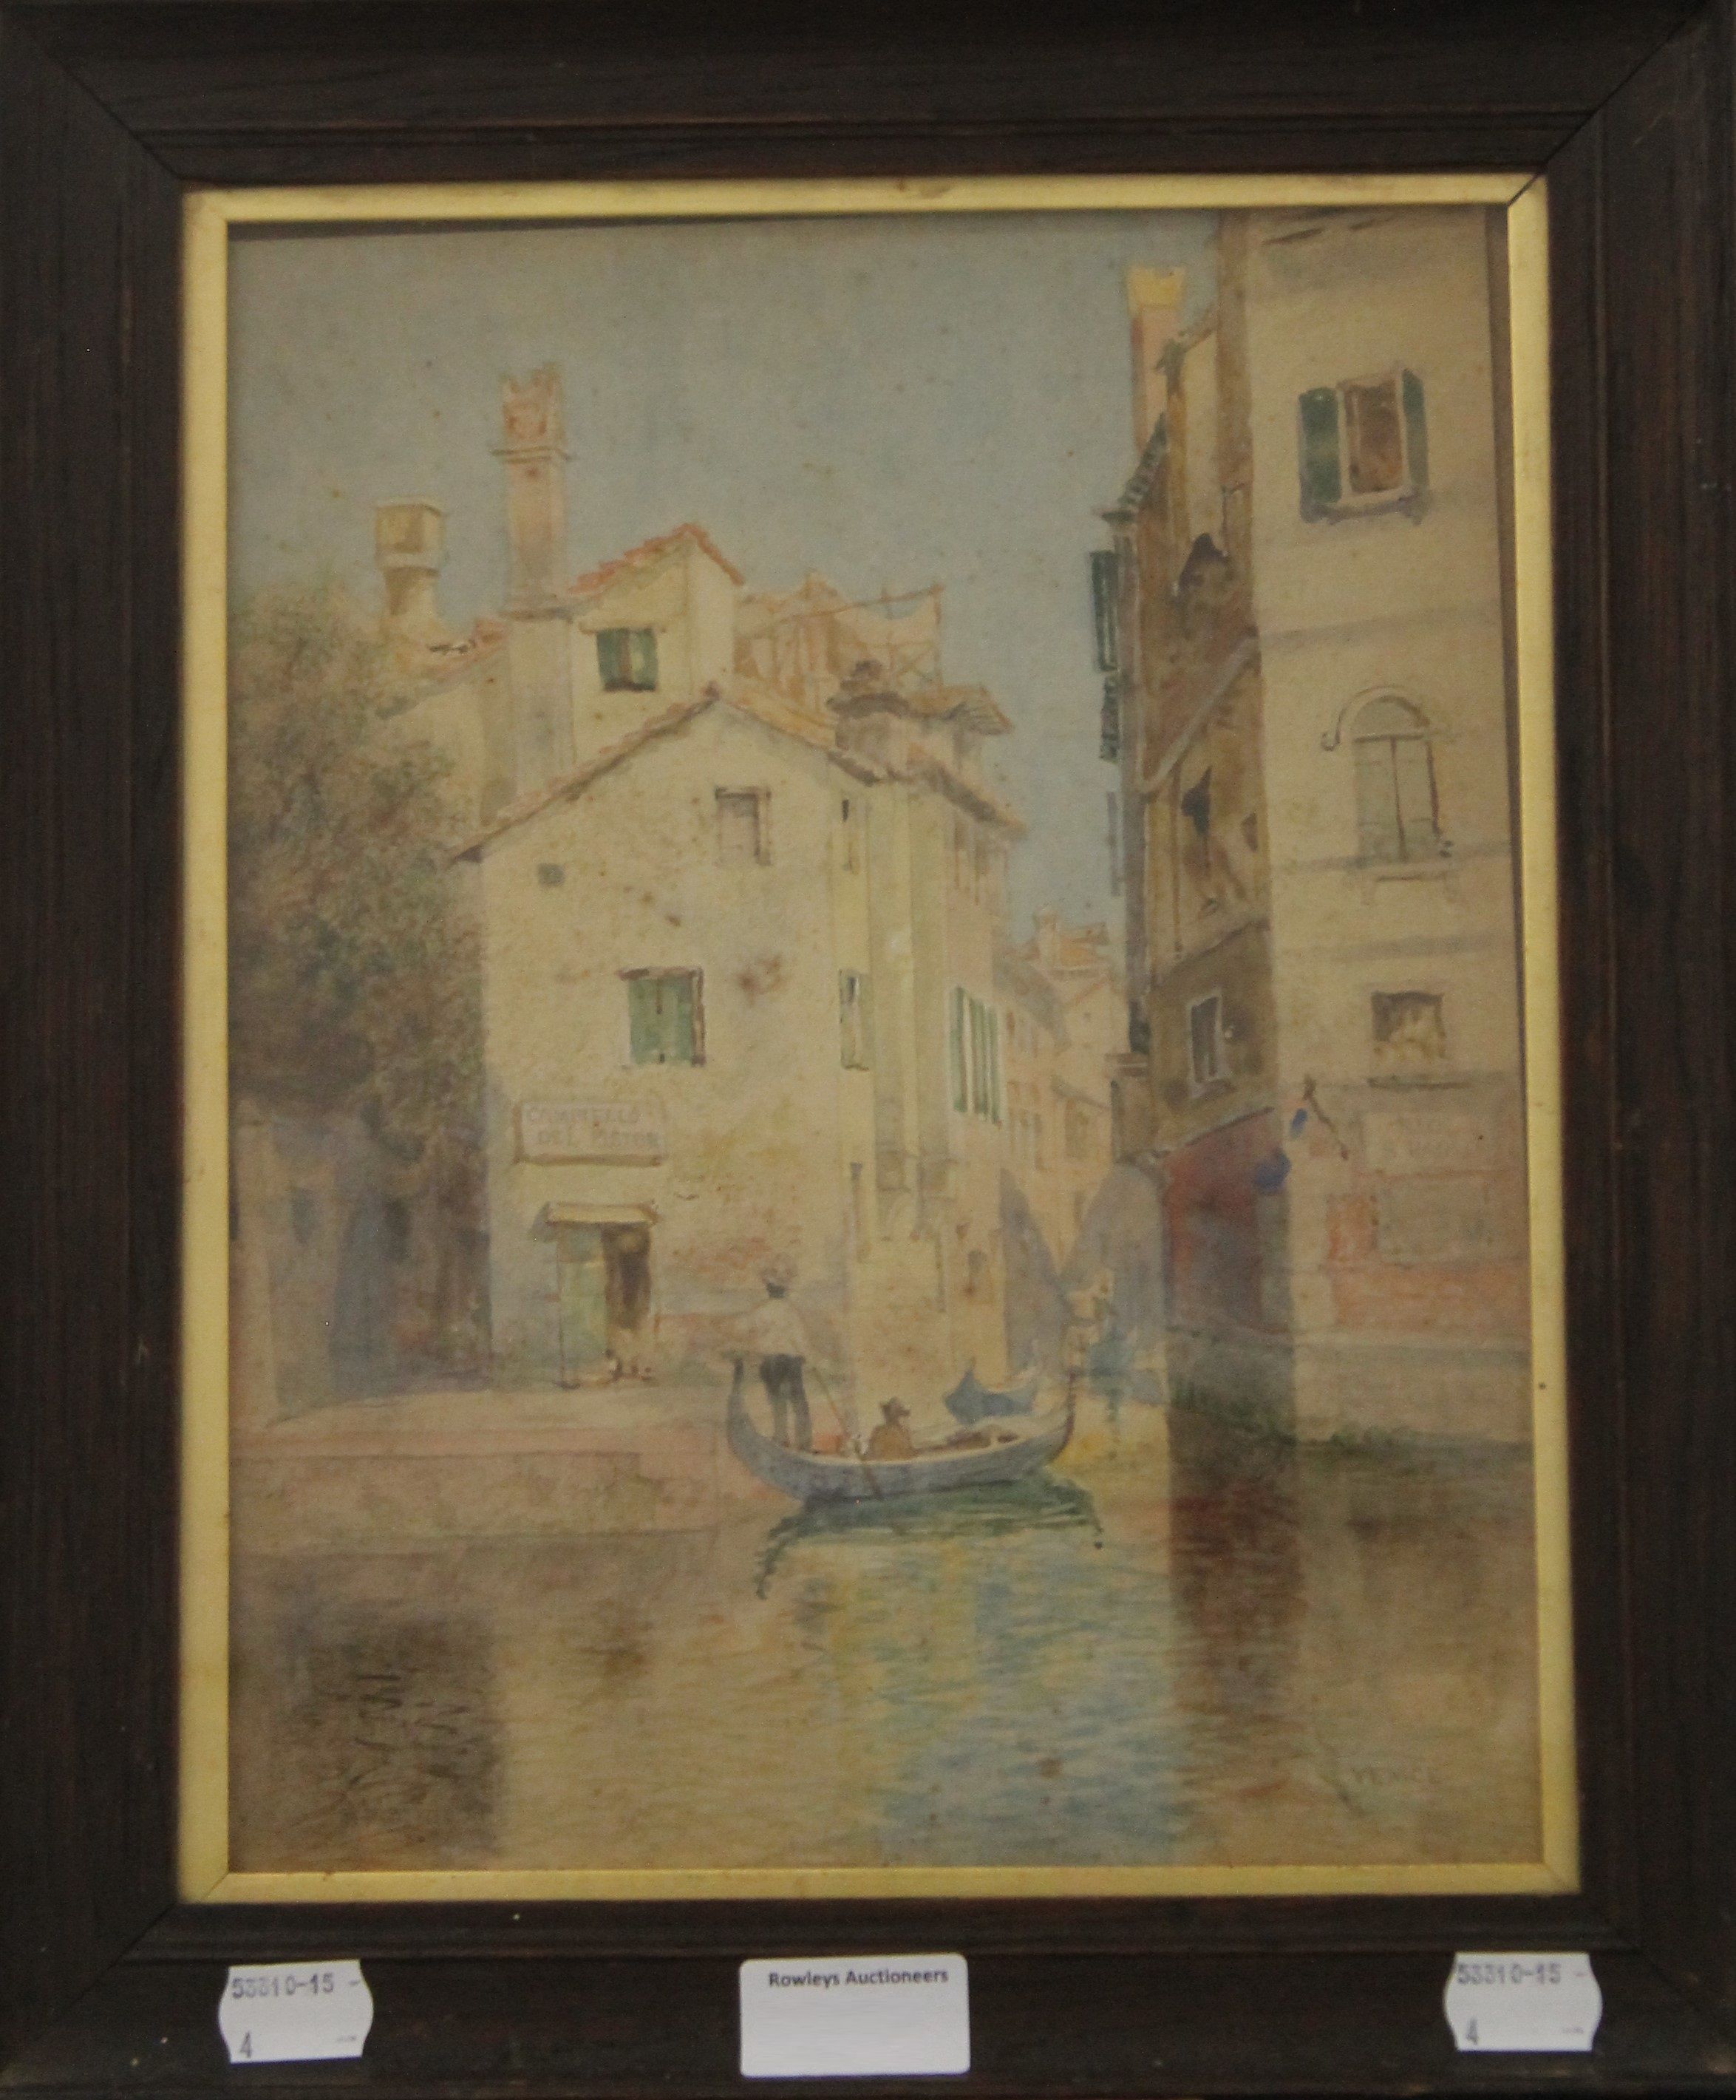 HUBERT JAMES MEDLYCOTT (1841-1920), British, Venetian Scene, watercolour, framed and glazed. - Image 2 of 3